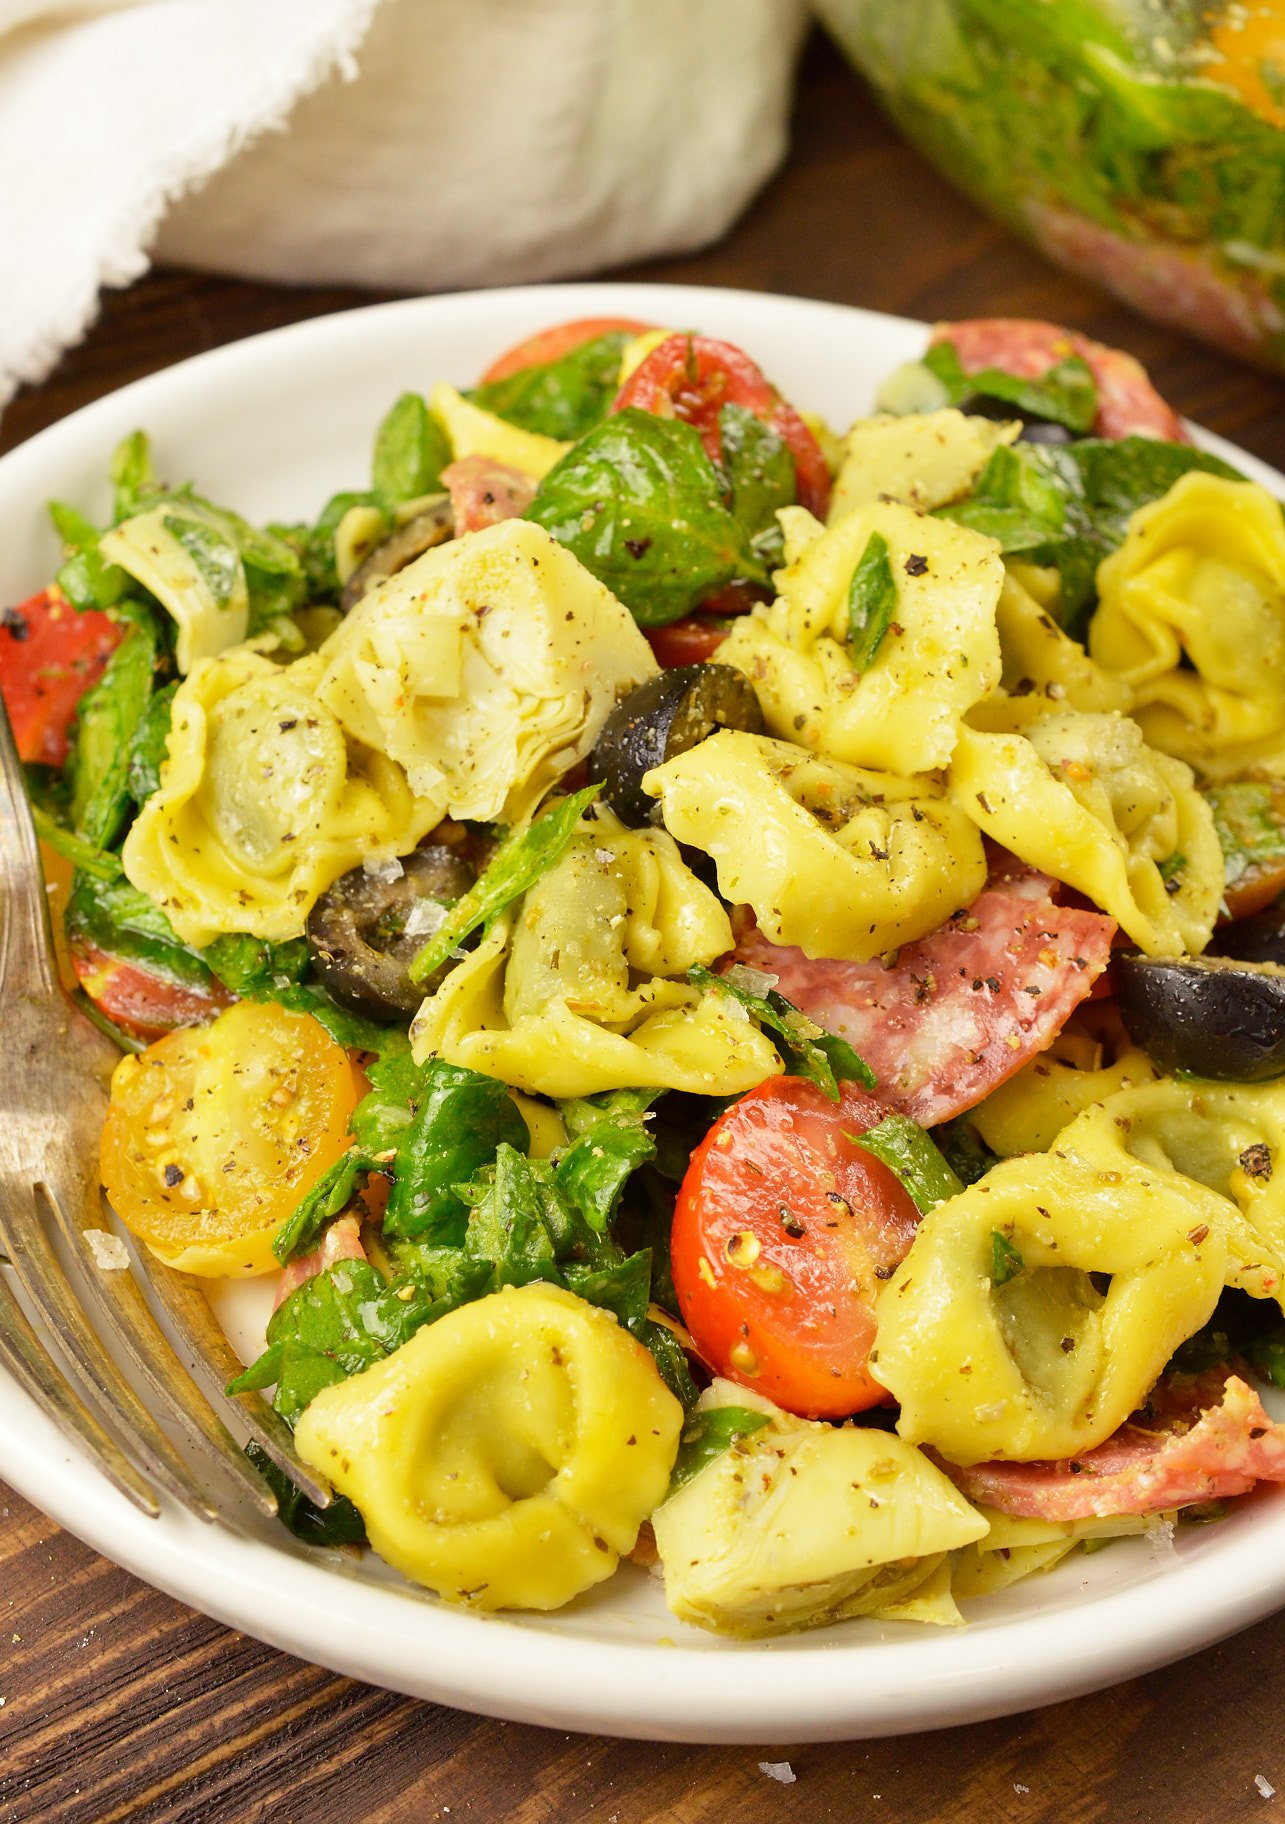 Spinach Tortellini Italian Pasta Salad Recipe - video ...